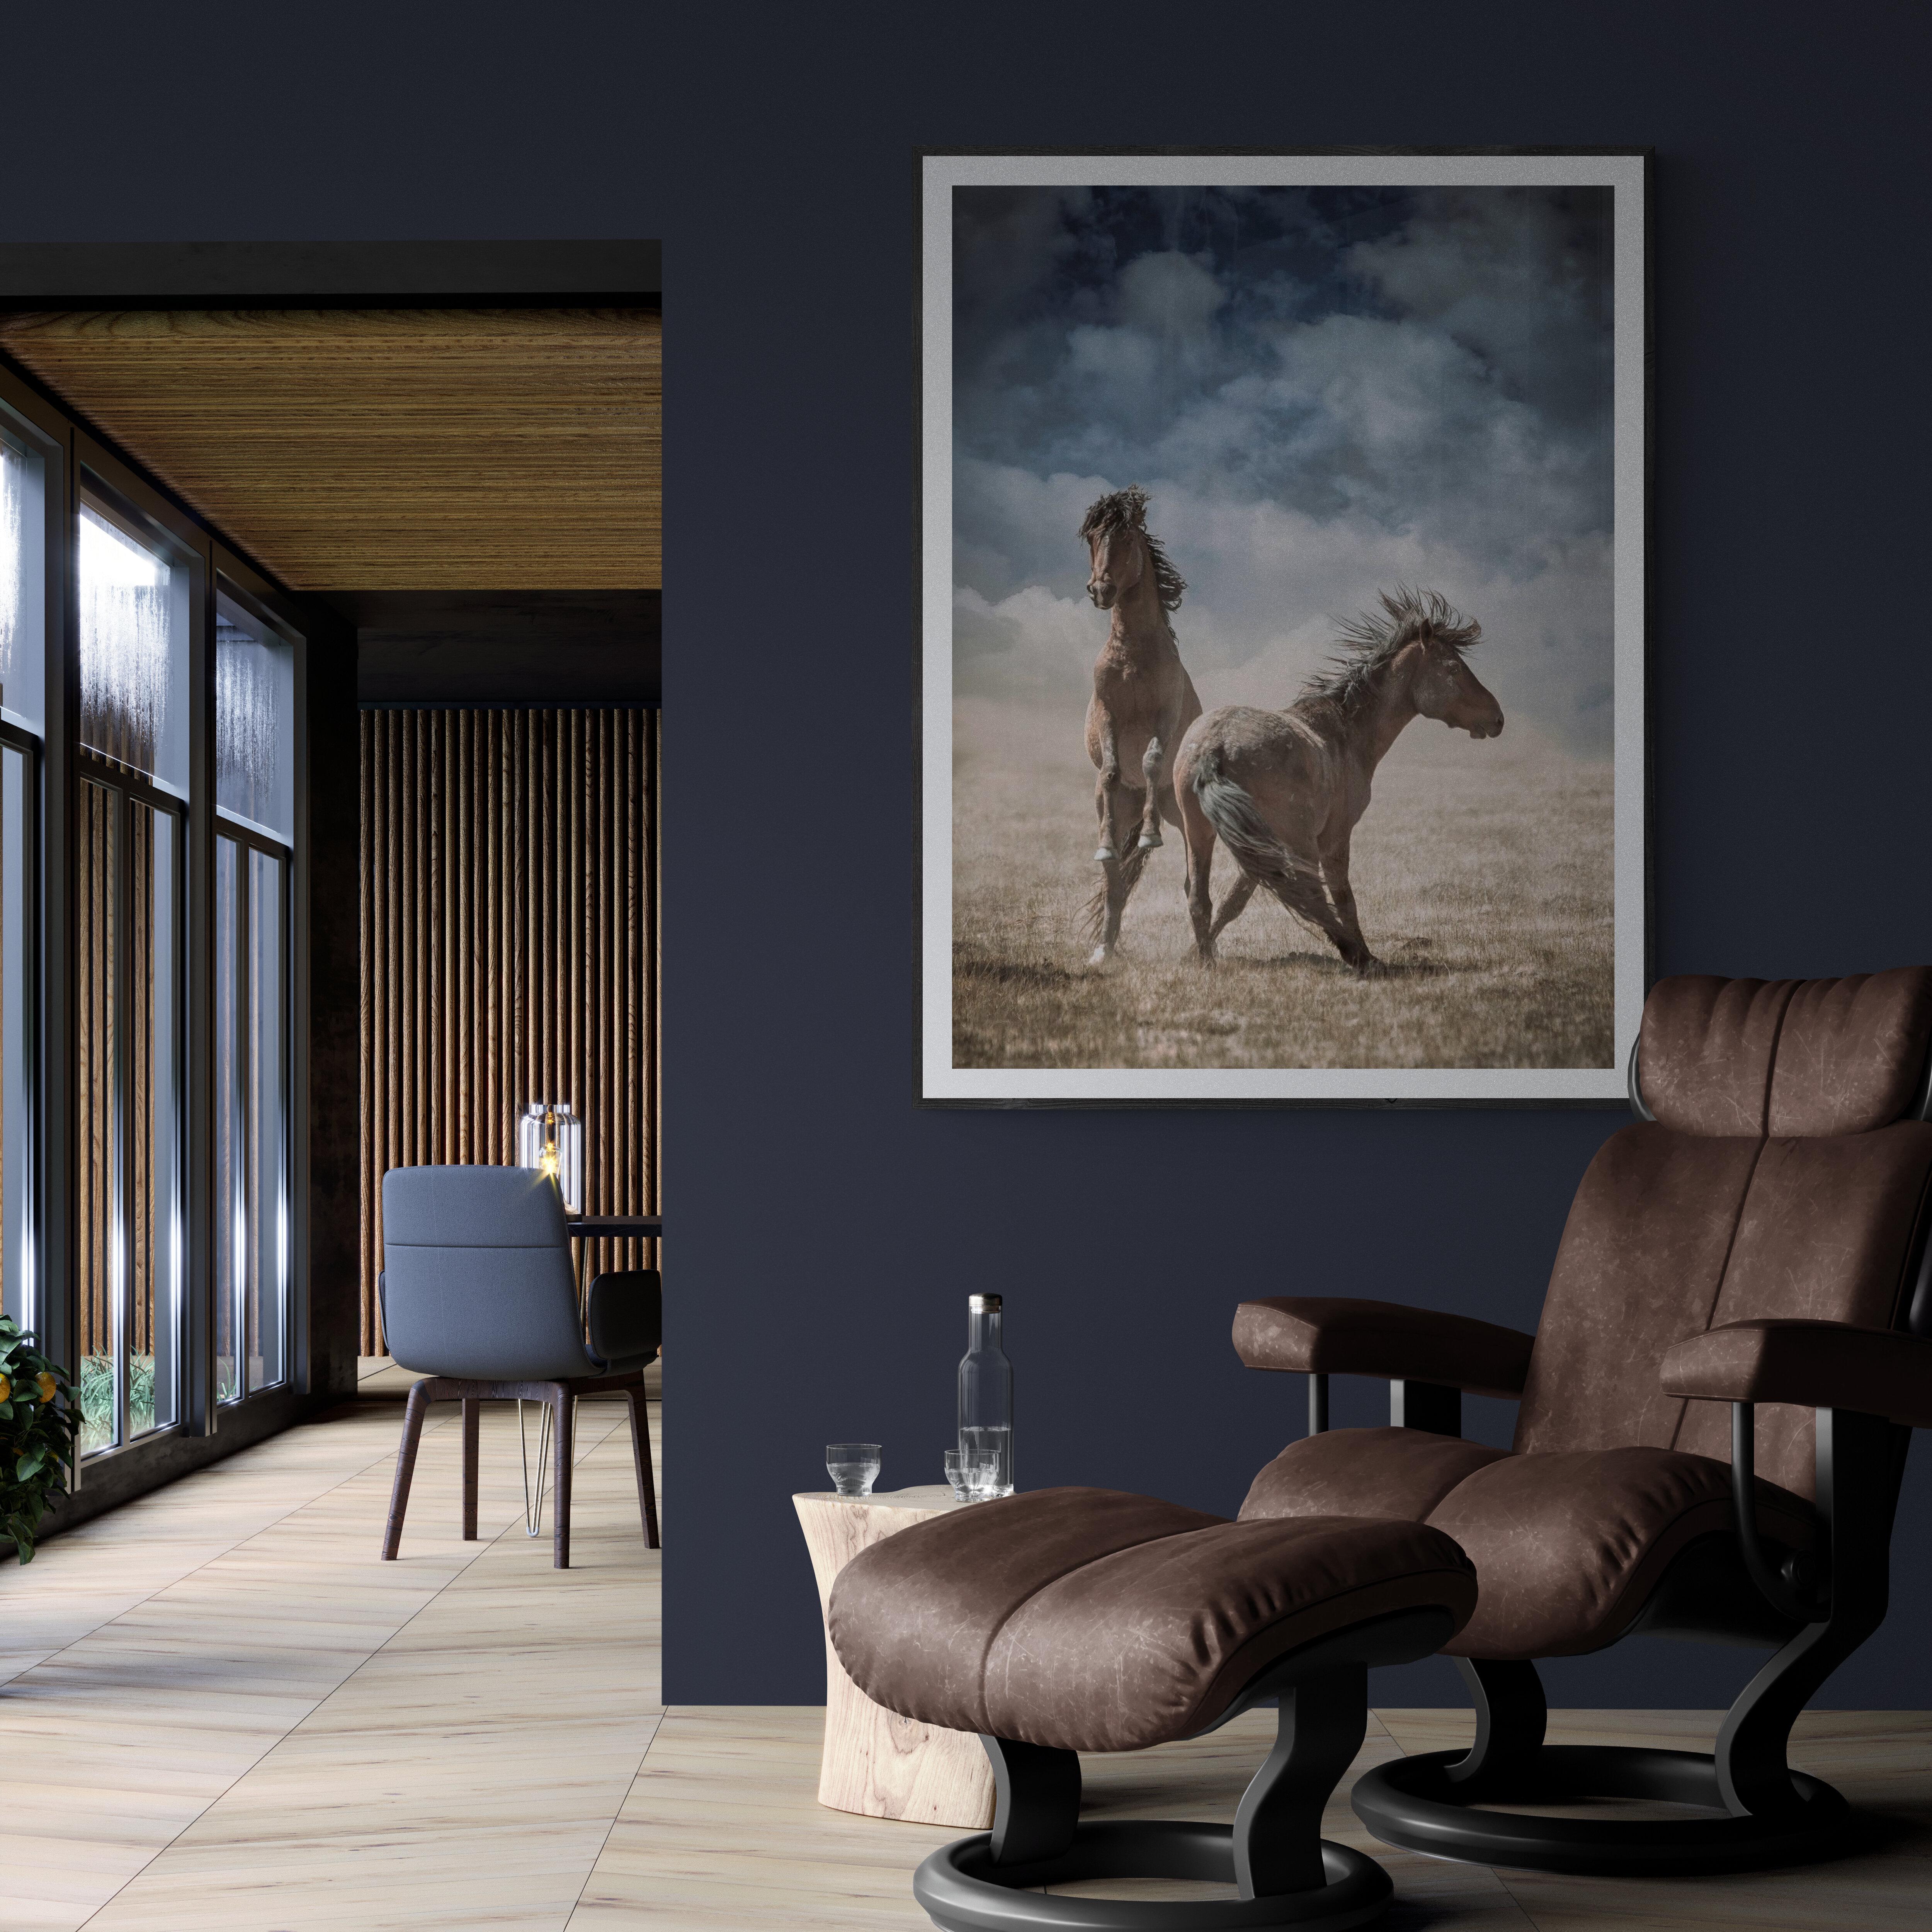 Il s'agit d'une œuvre contemporaine.  photographie sur papier d'archivage. Shane Russeck est connu dans le monde entier pour ses images de chevaux sauvages. 
Il s'agit de l'une des trois seules images en couleur qu'il a créées dans cette série.

